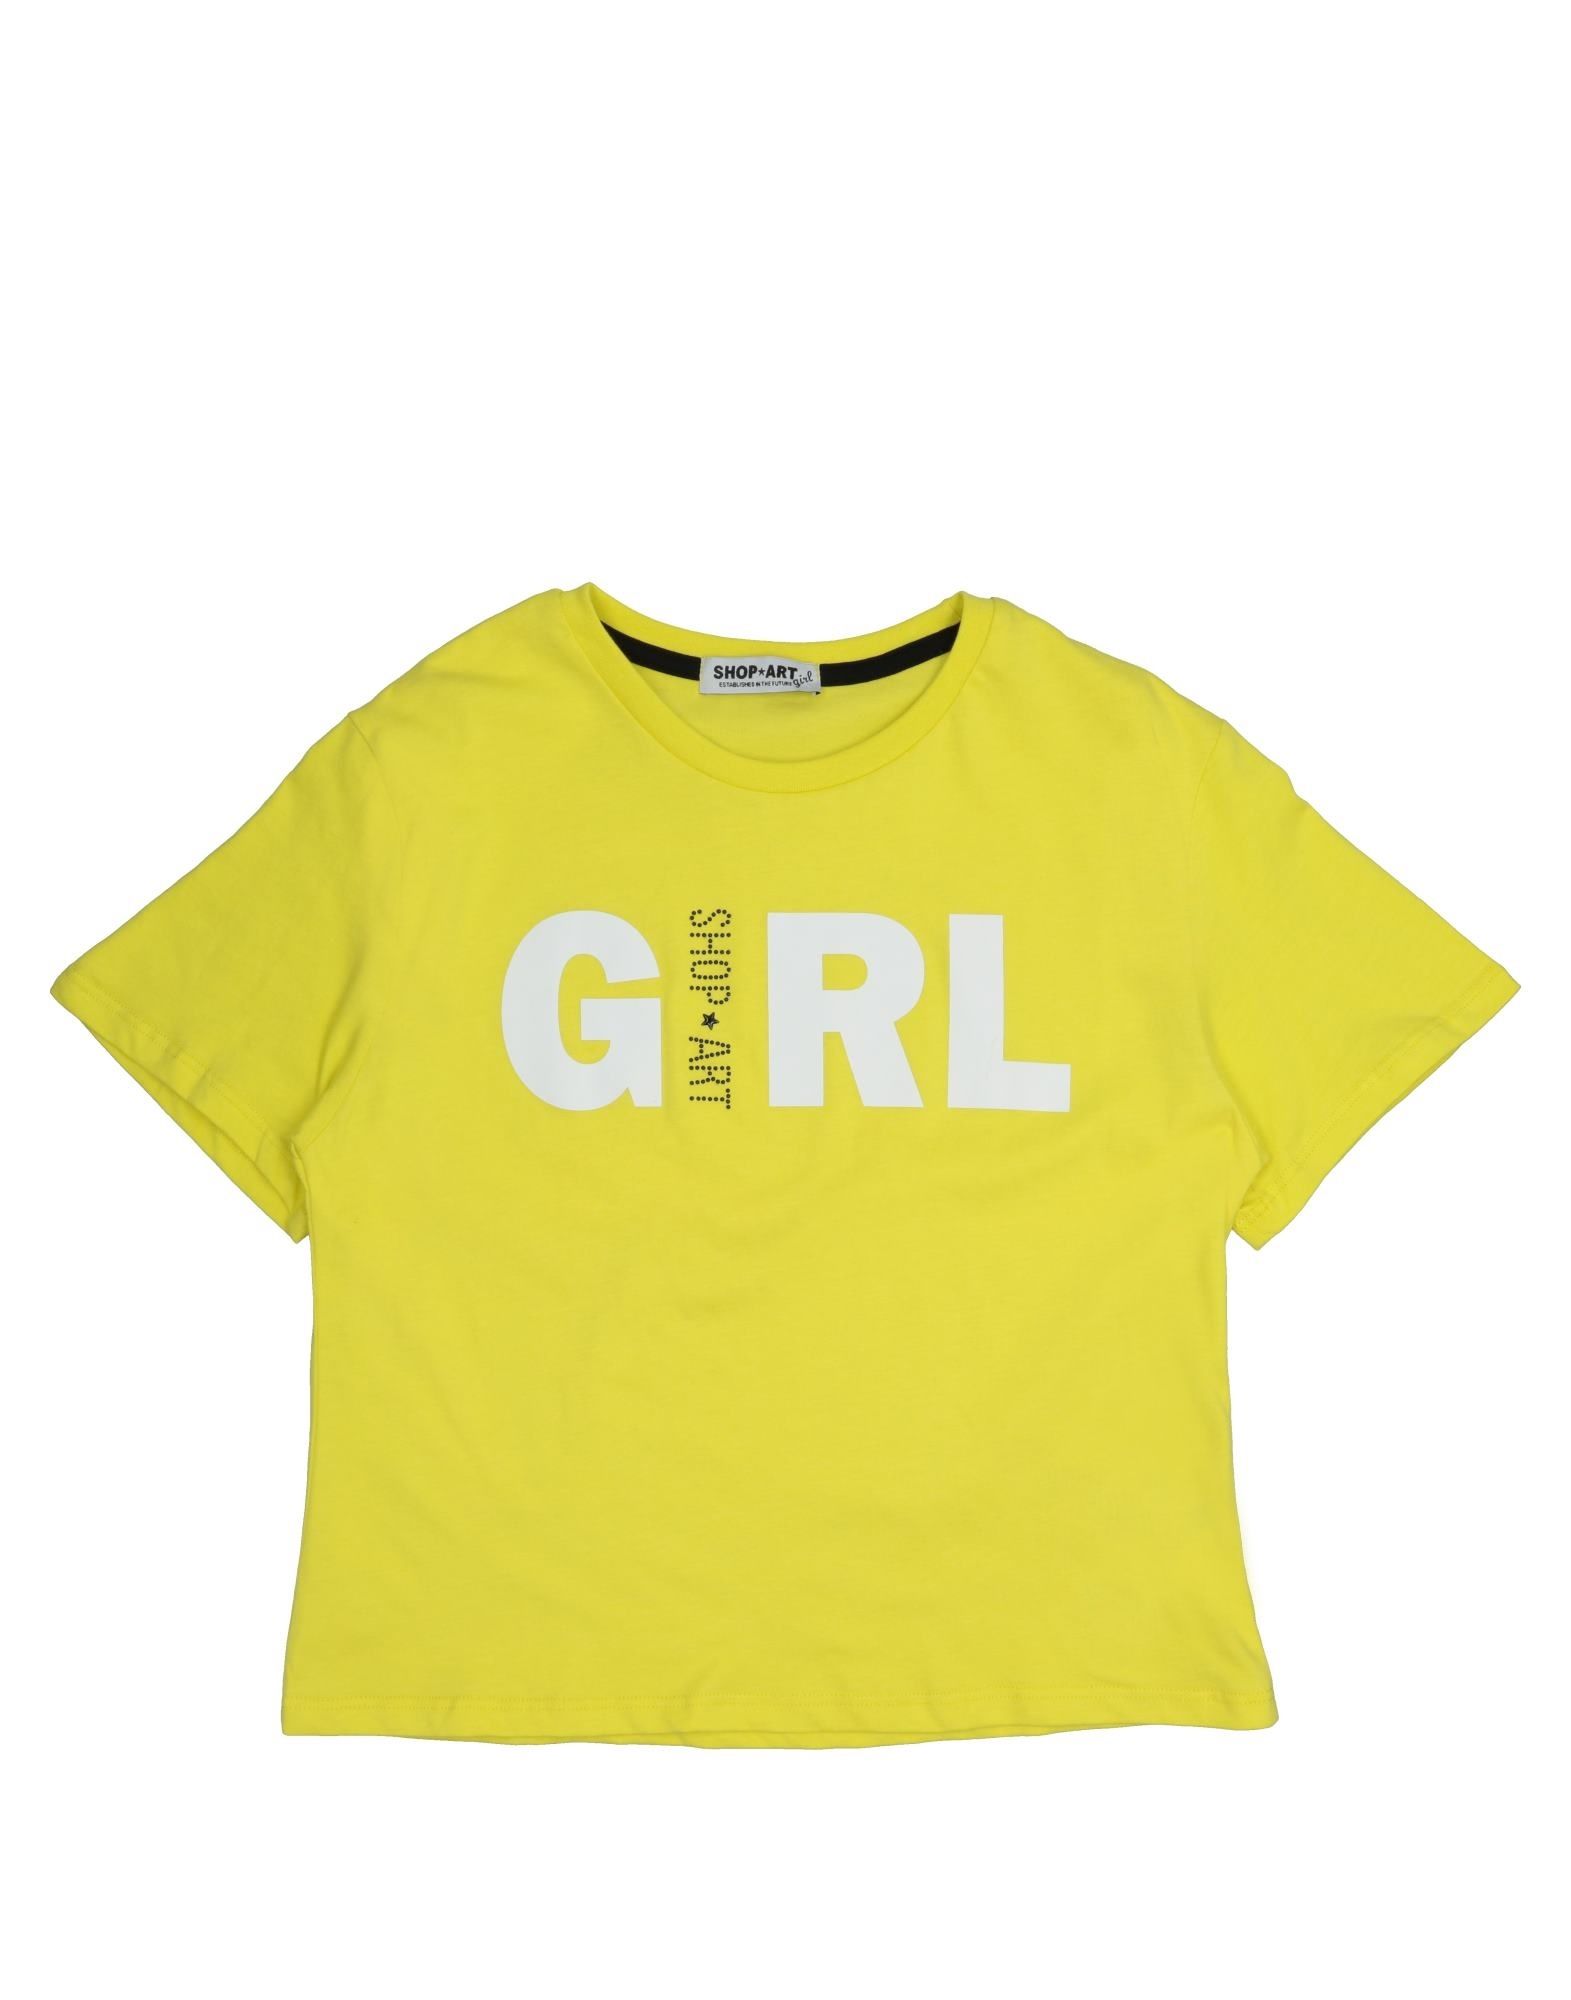 SHOP ★ ART T-shirts Kinder Gelb von SHOP ★ ART